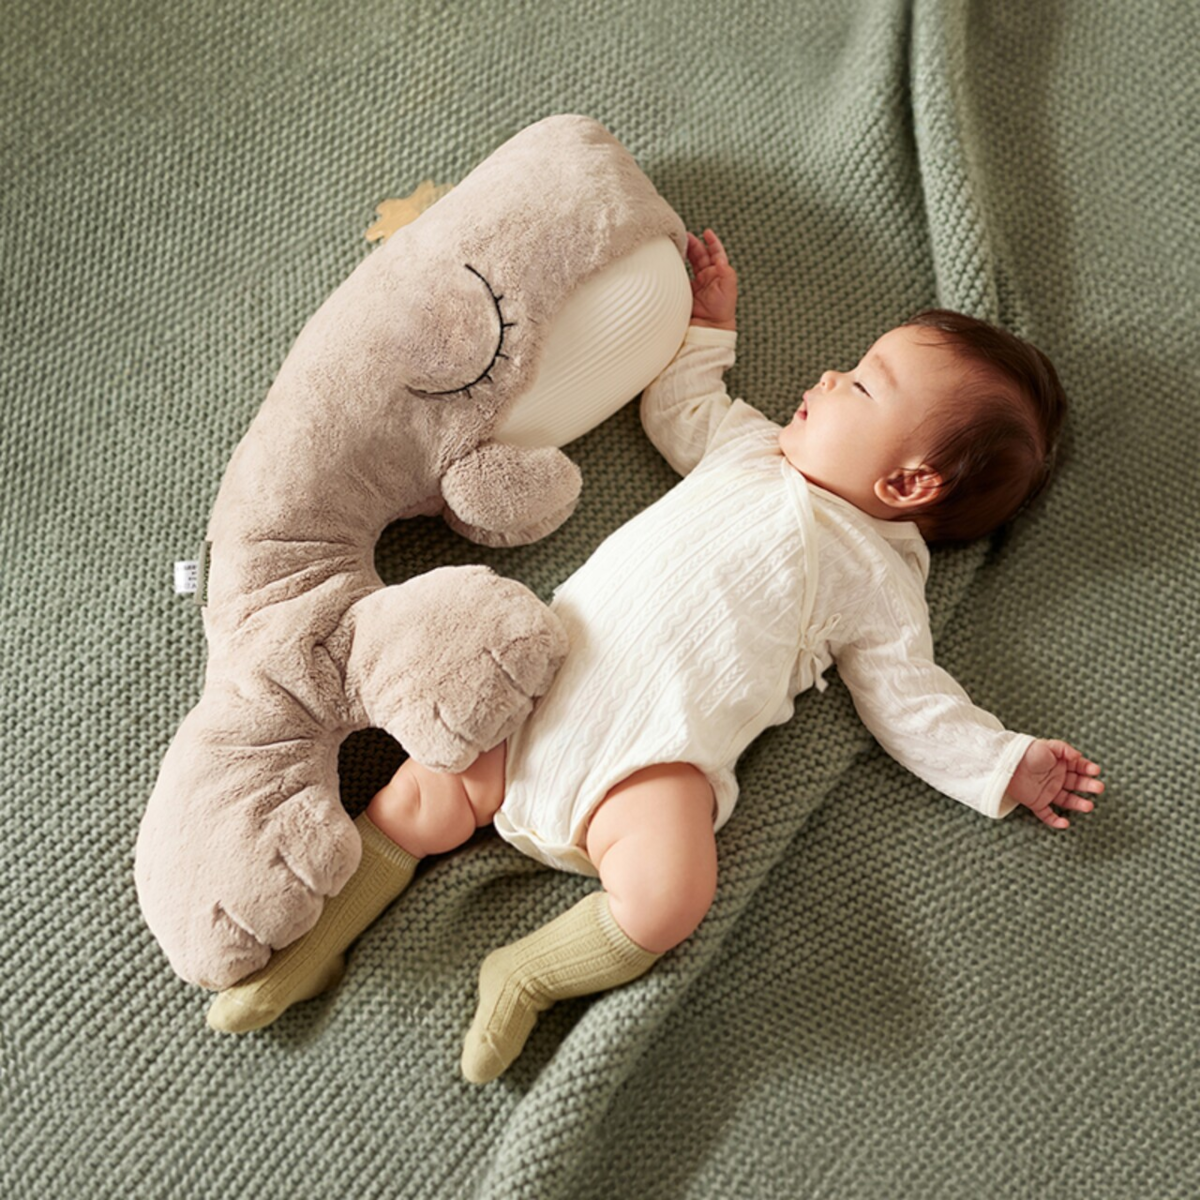 SchlafGut Wal von Topbright für Top 10 Baby & Kind nominiert